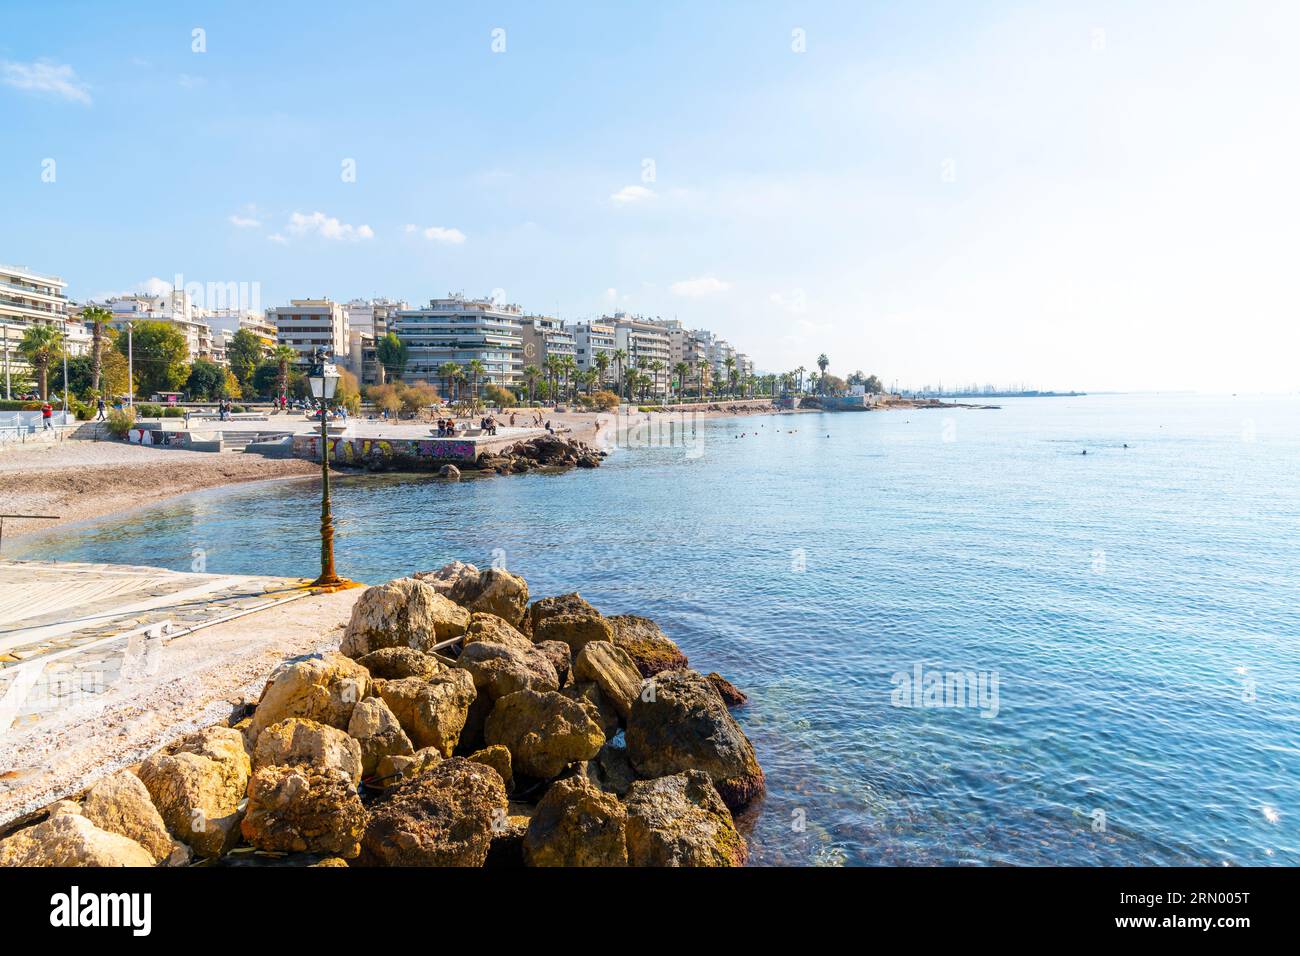 Der Strand, die Strandpromenade, der Strand und die felsige Küste von Palaio Faliro, Griechenland, mit Resort-Hotels mit Blick auf das Meer an der Athener Riviera. Stockfoto